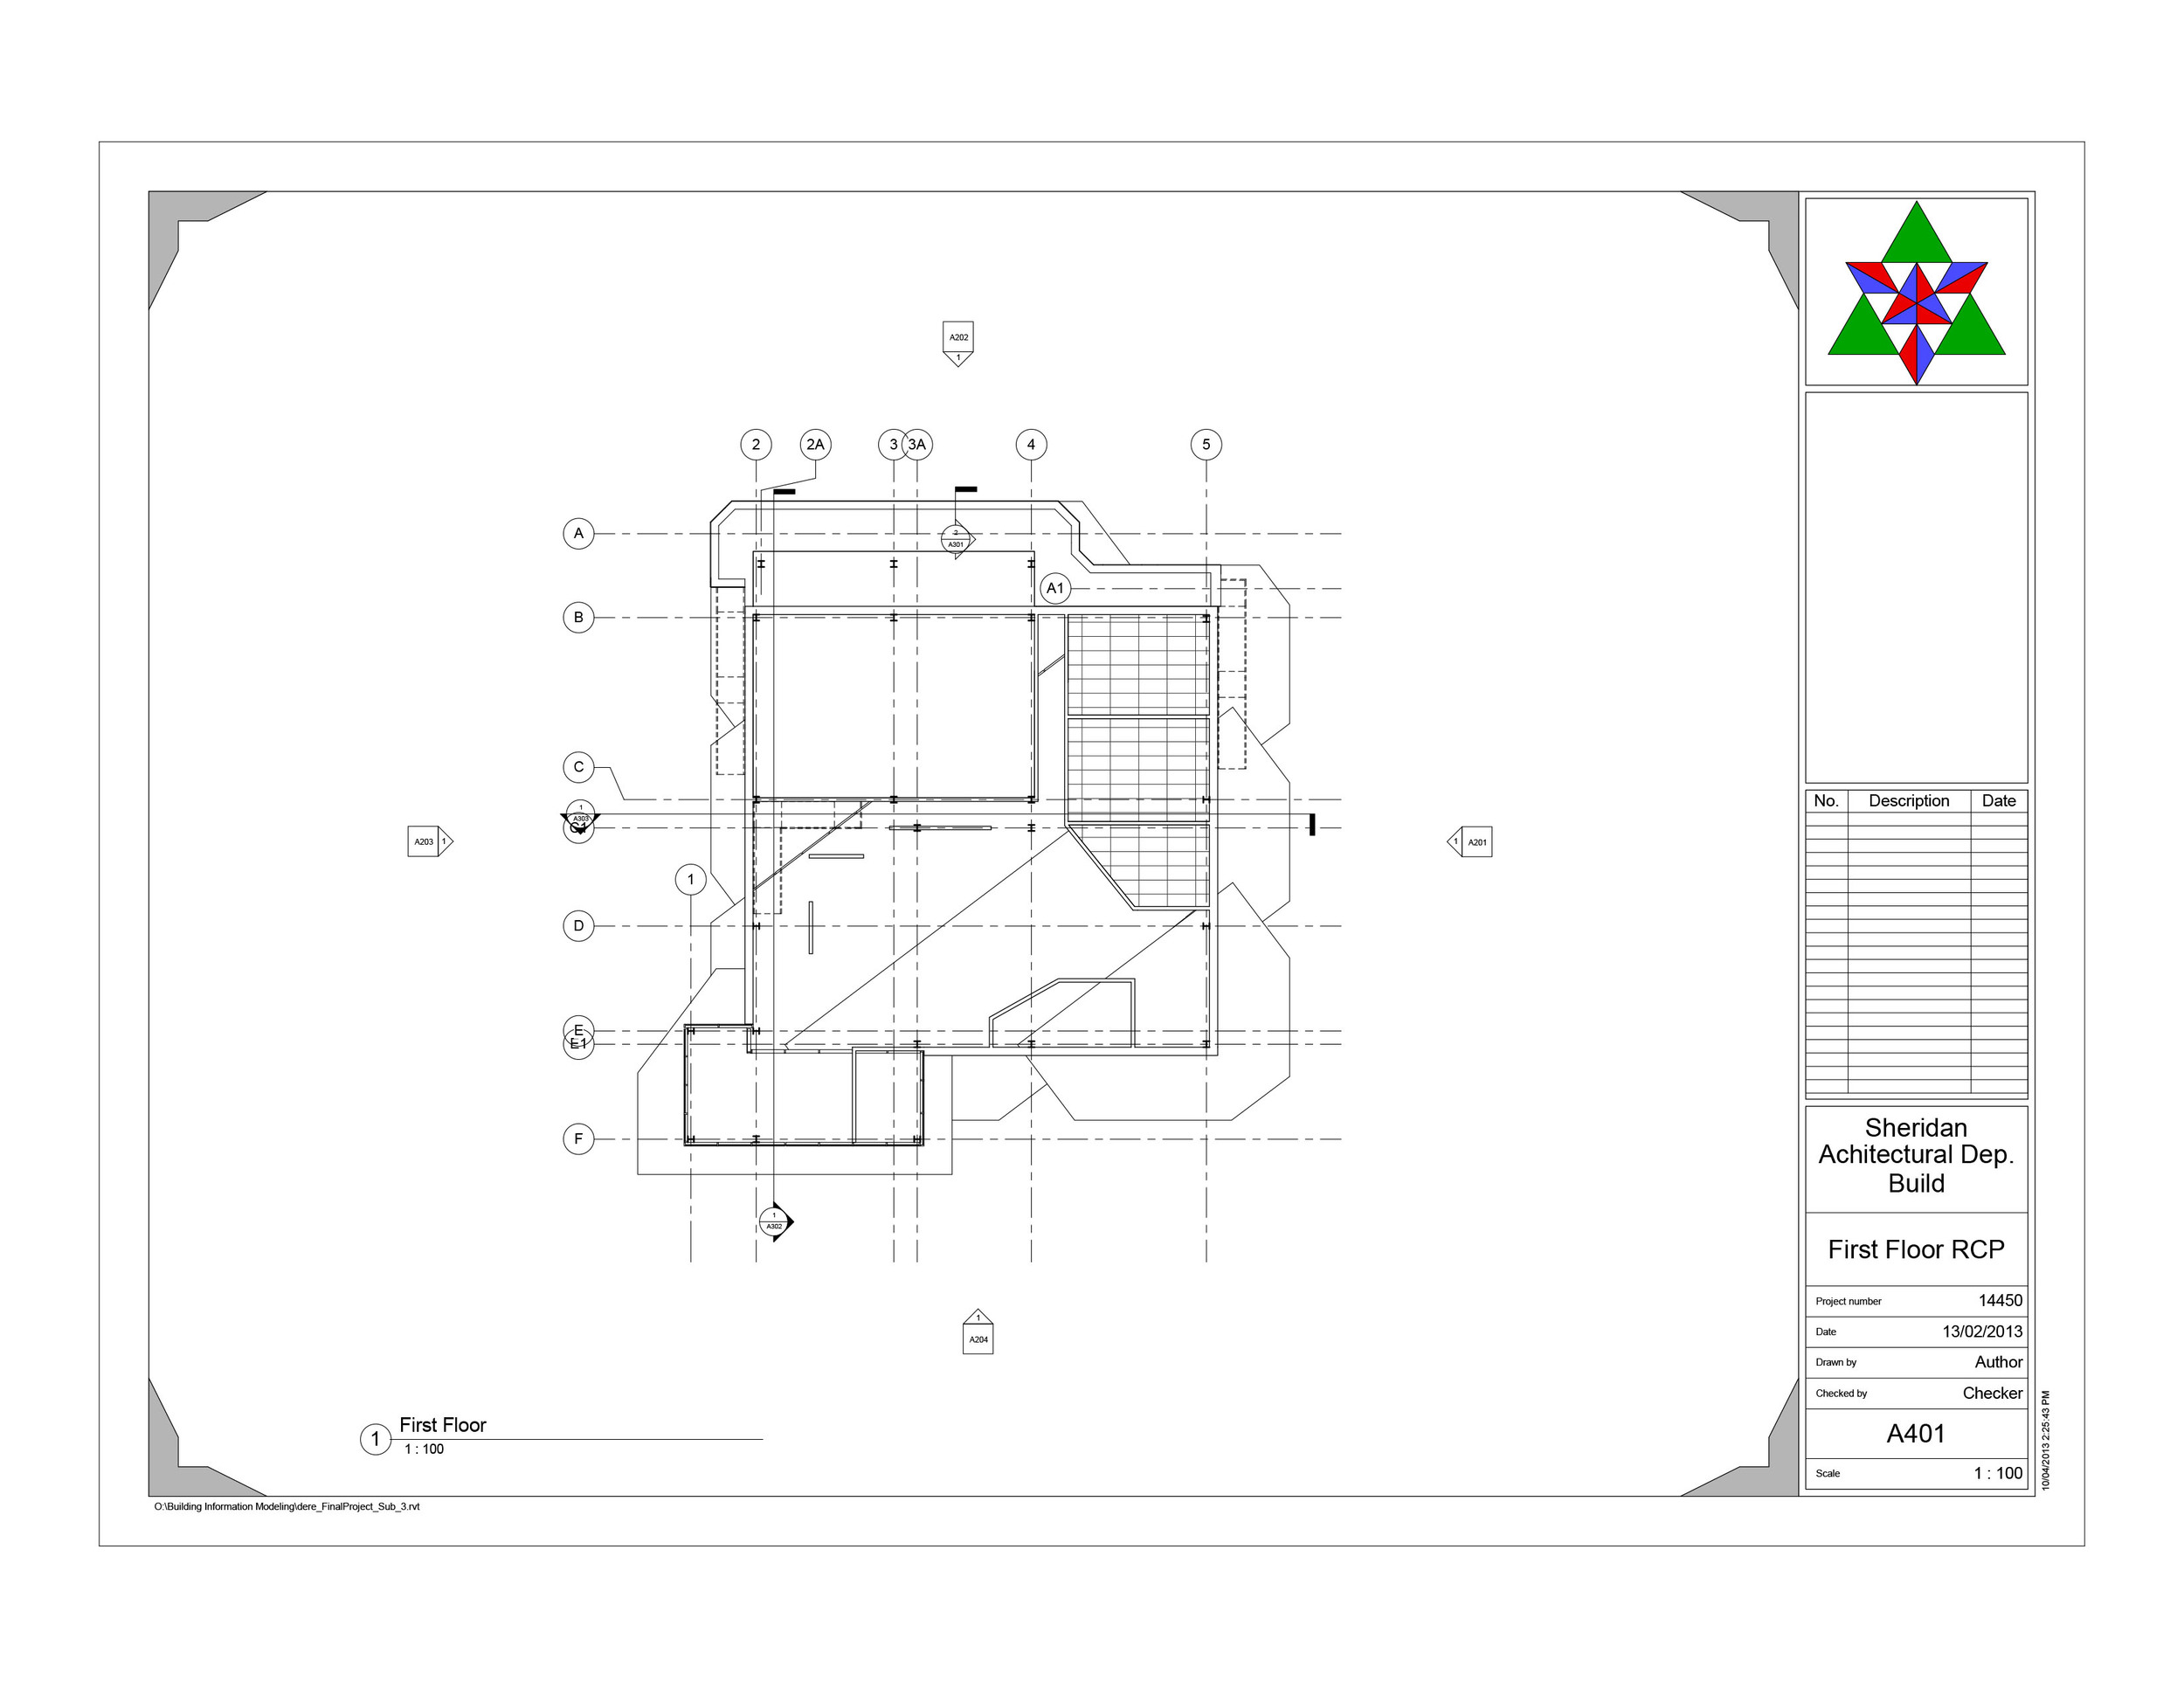 dere_FinalProject  - Sheet - A401 - First Floor RCP.jpg